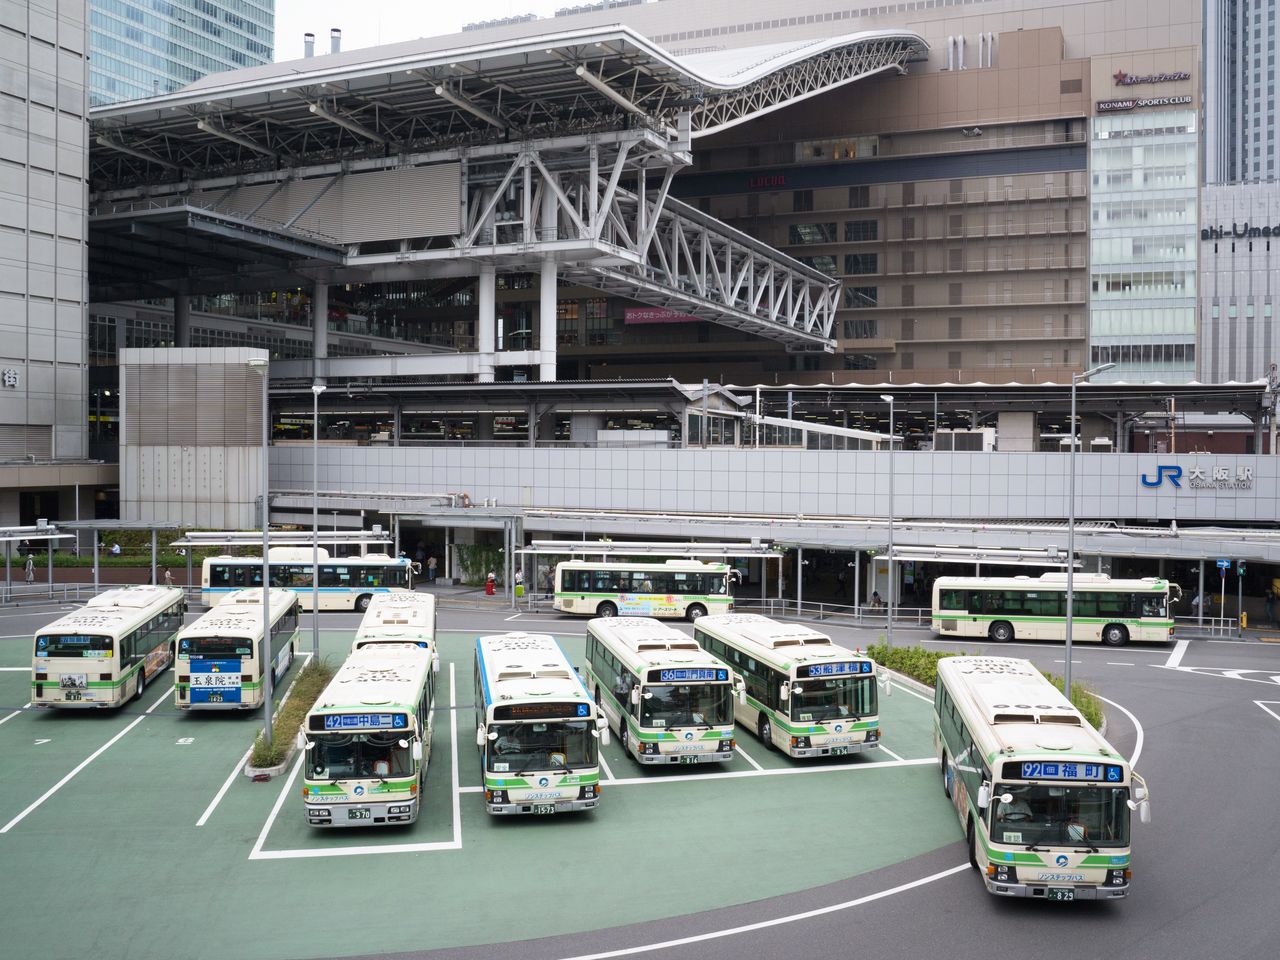 大阪站的公交总站。公共汽车线路遍布整个大阪